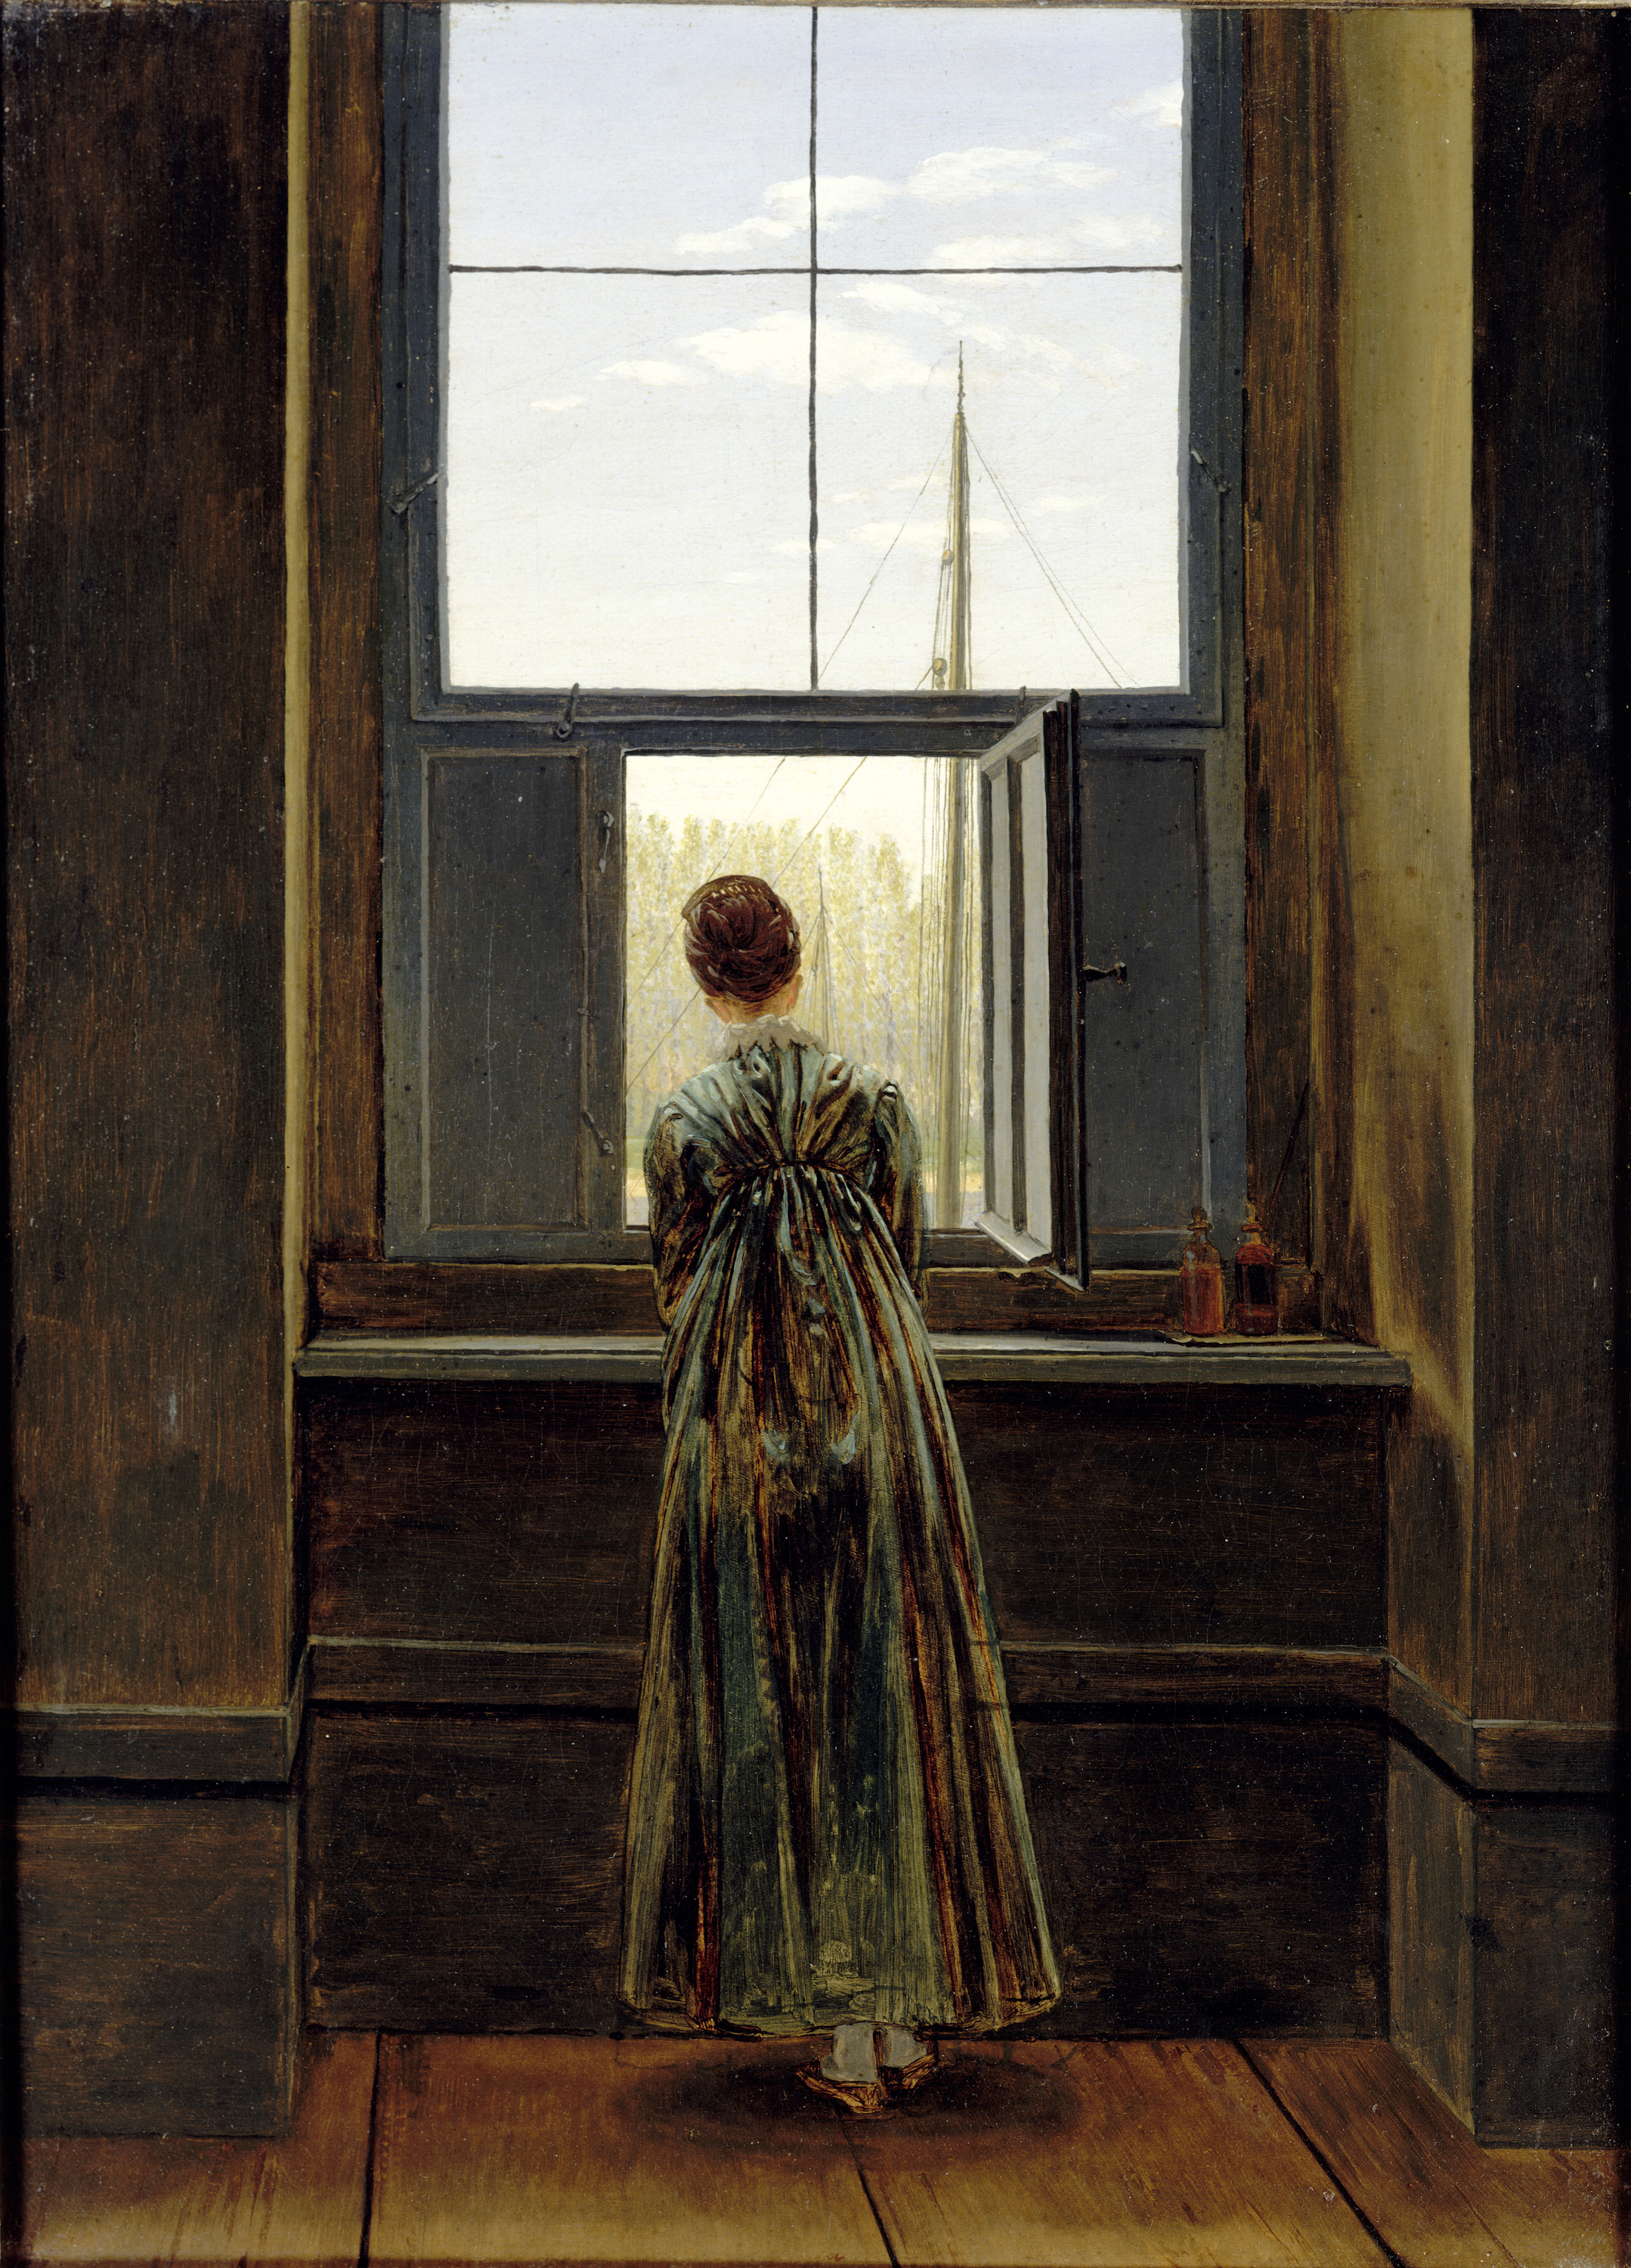 Femme à la fenêtre by Caspar David Friedrich - 1822 - 73 x 44,1 cm Alte Nationalgalerie